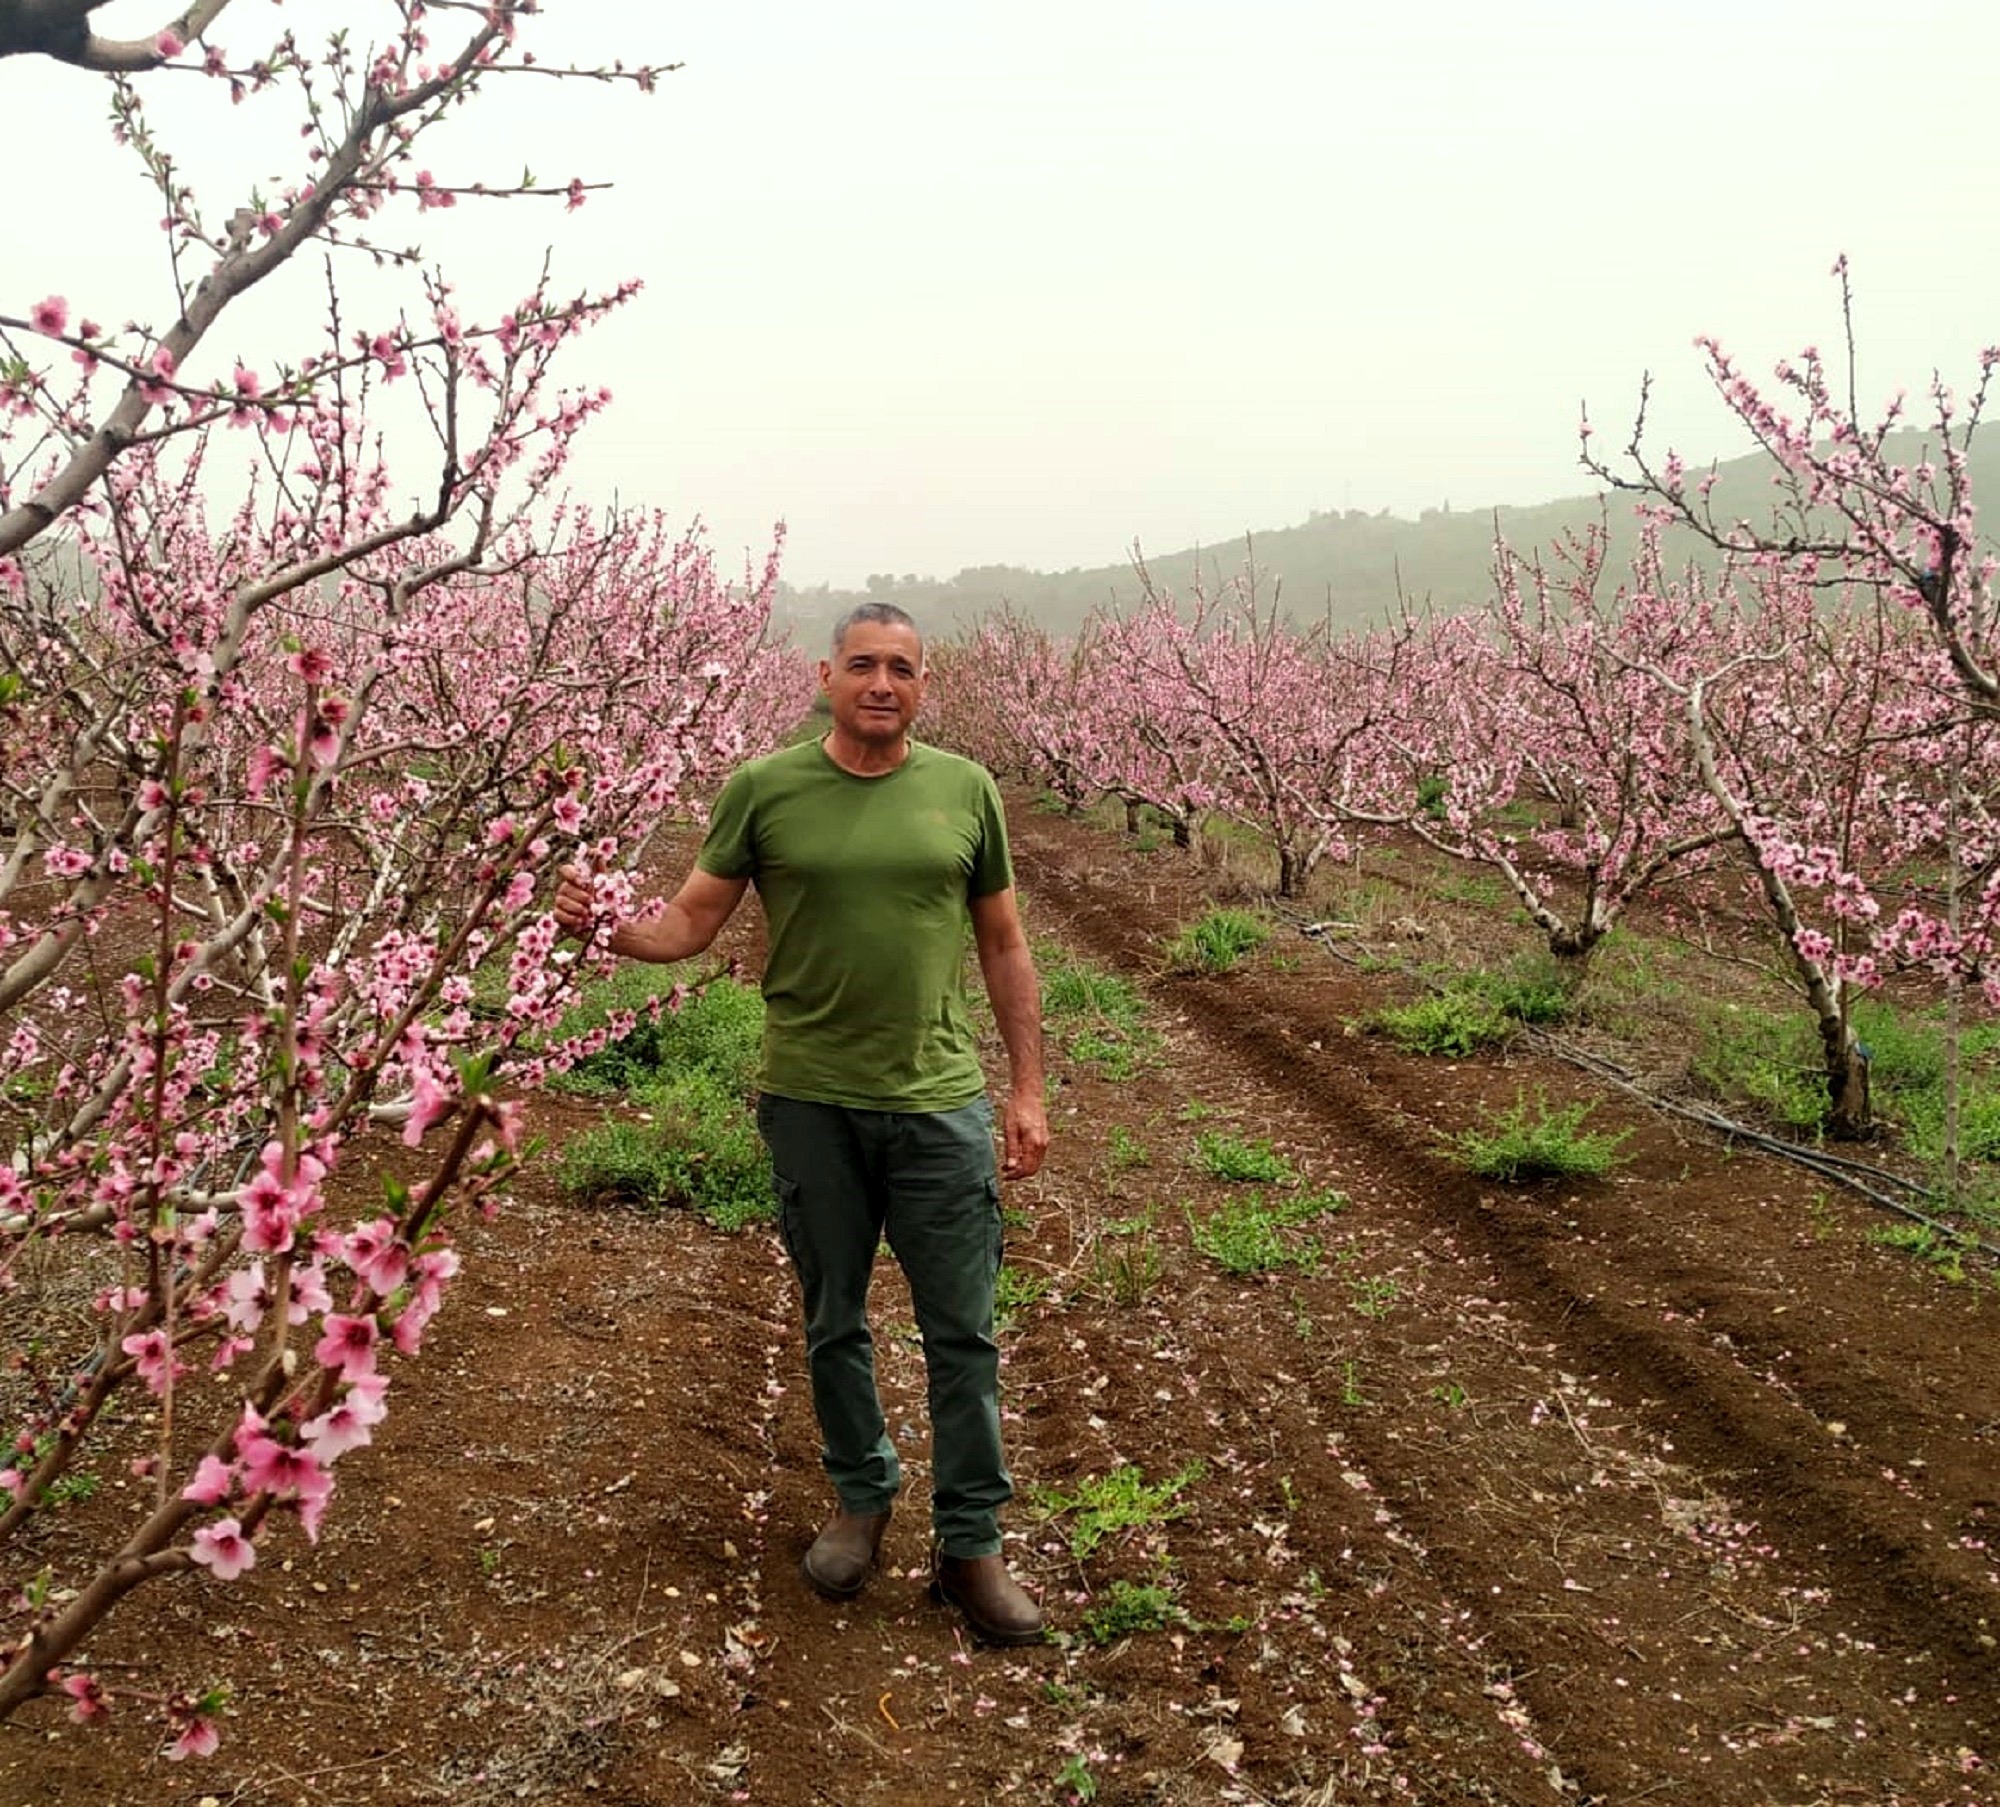 ירון בלחסן מנכ”ל ארגון מגדלי הפירות בישראל בסיור מעקב להערכת מצב הפריחה במטעי הפרי בגליל העליון